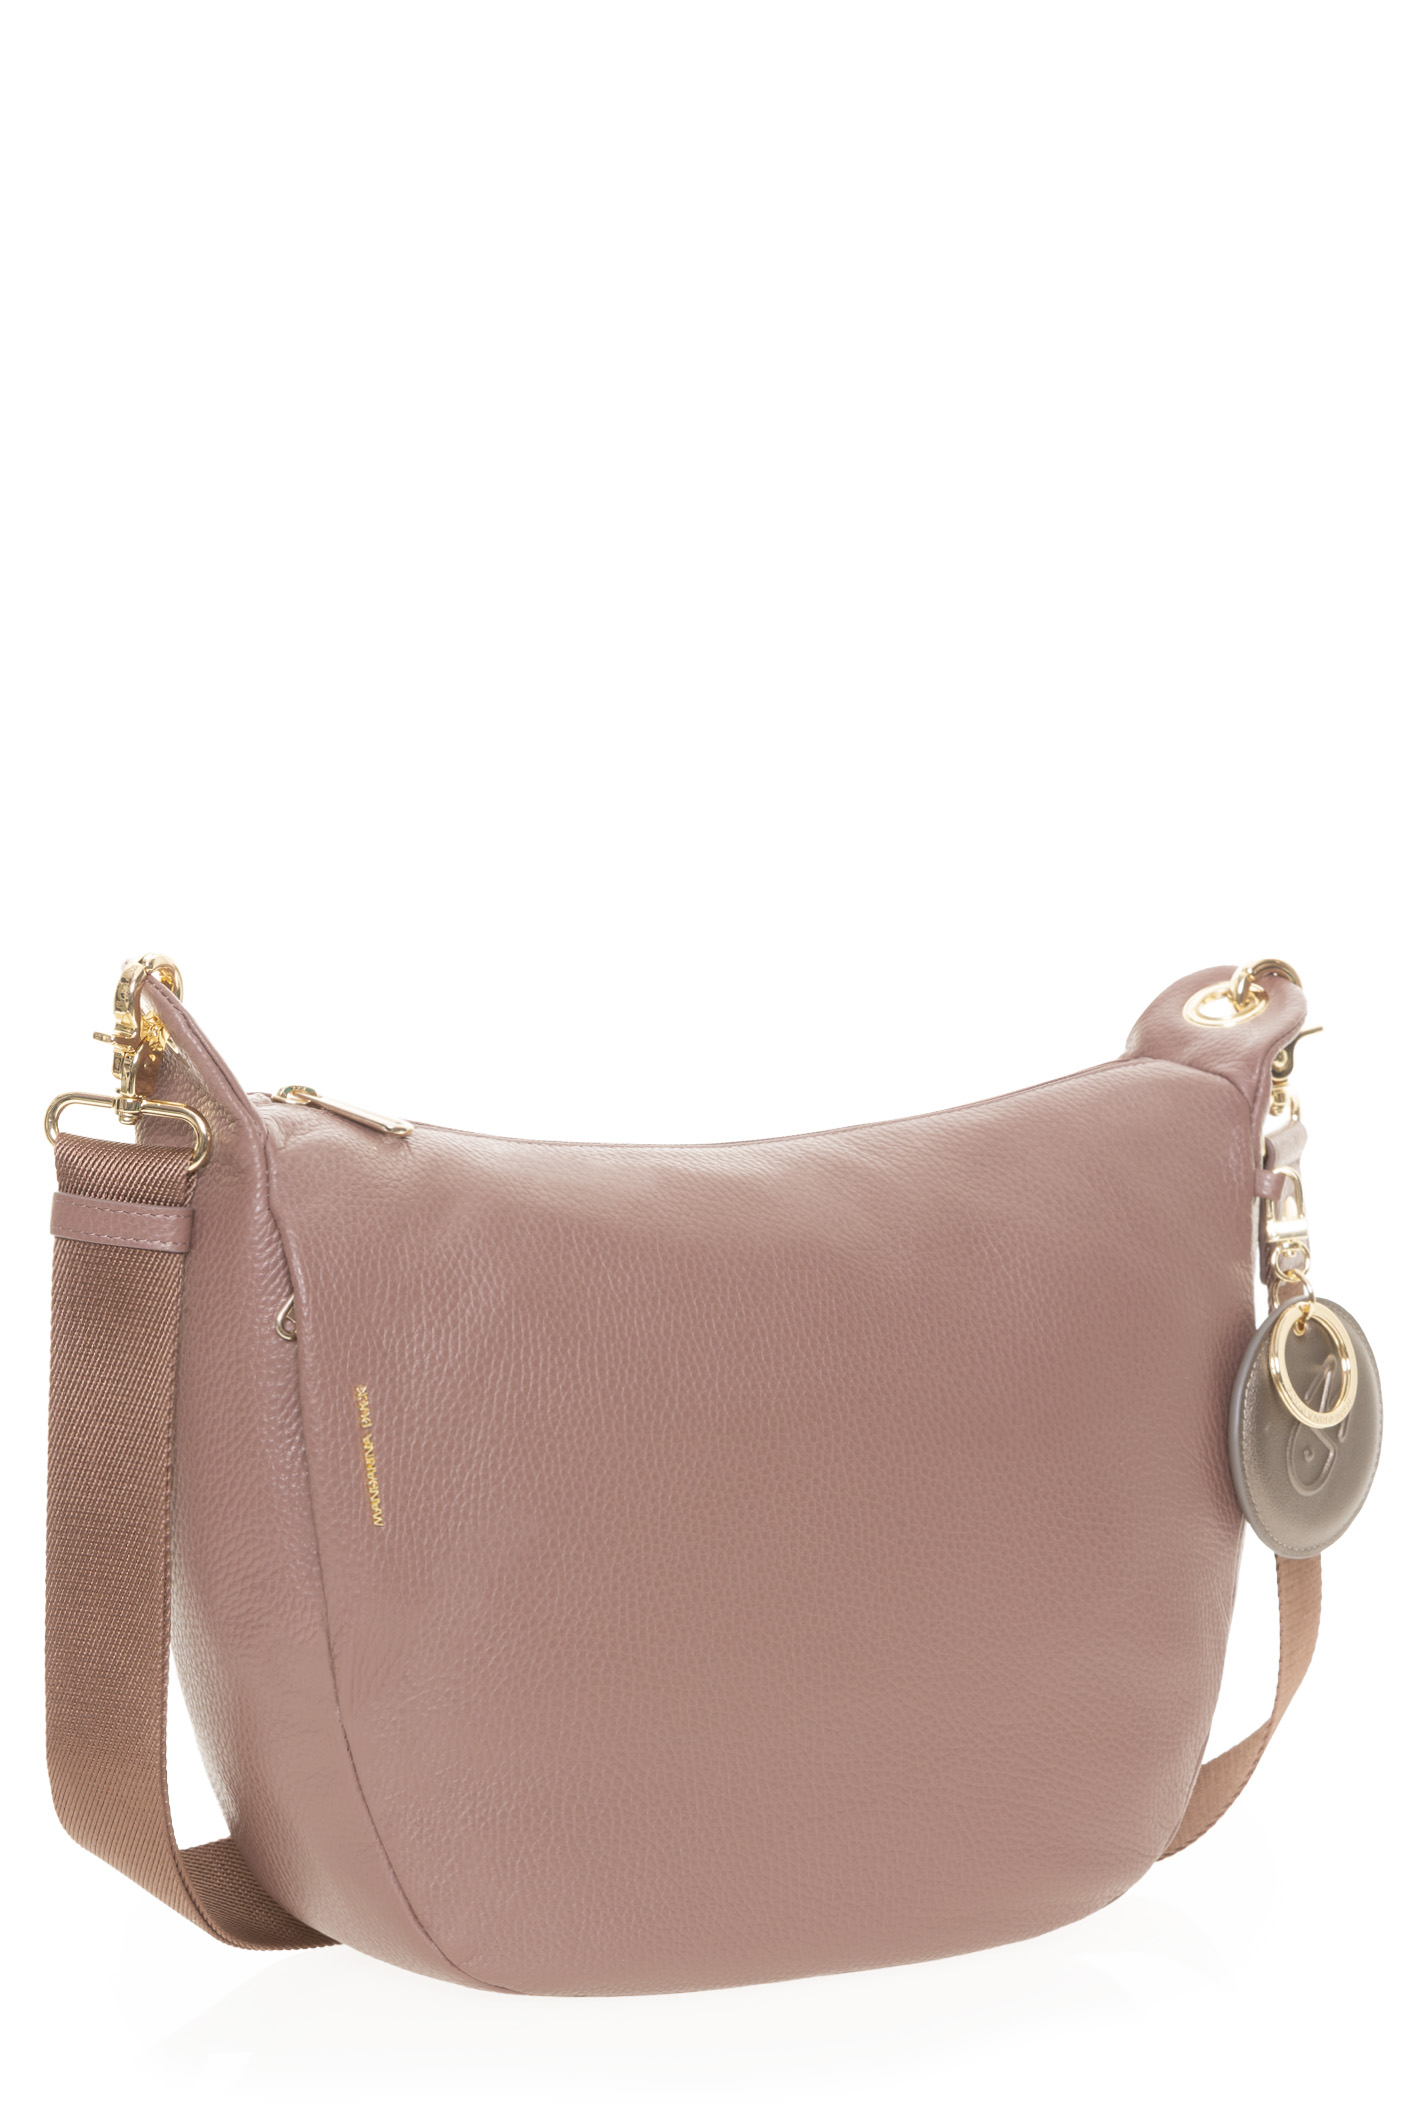 Mellow Handbag – CLN